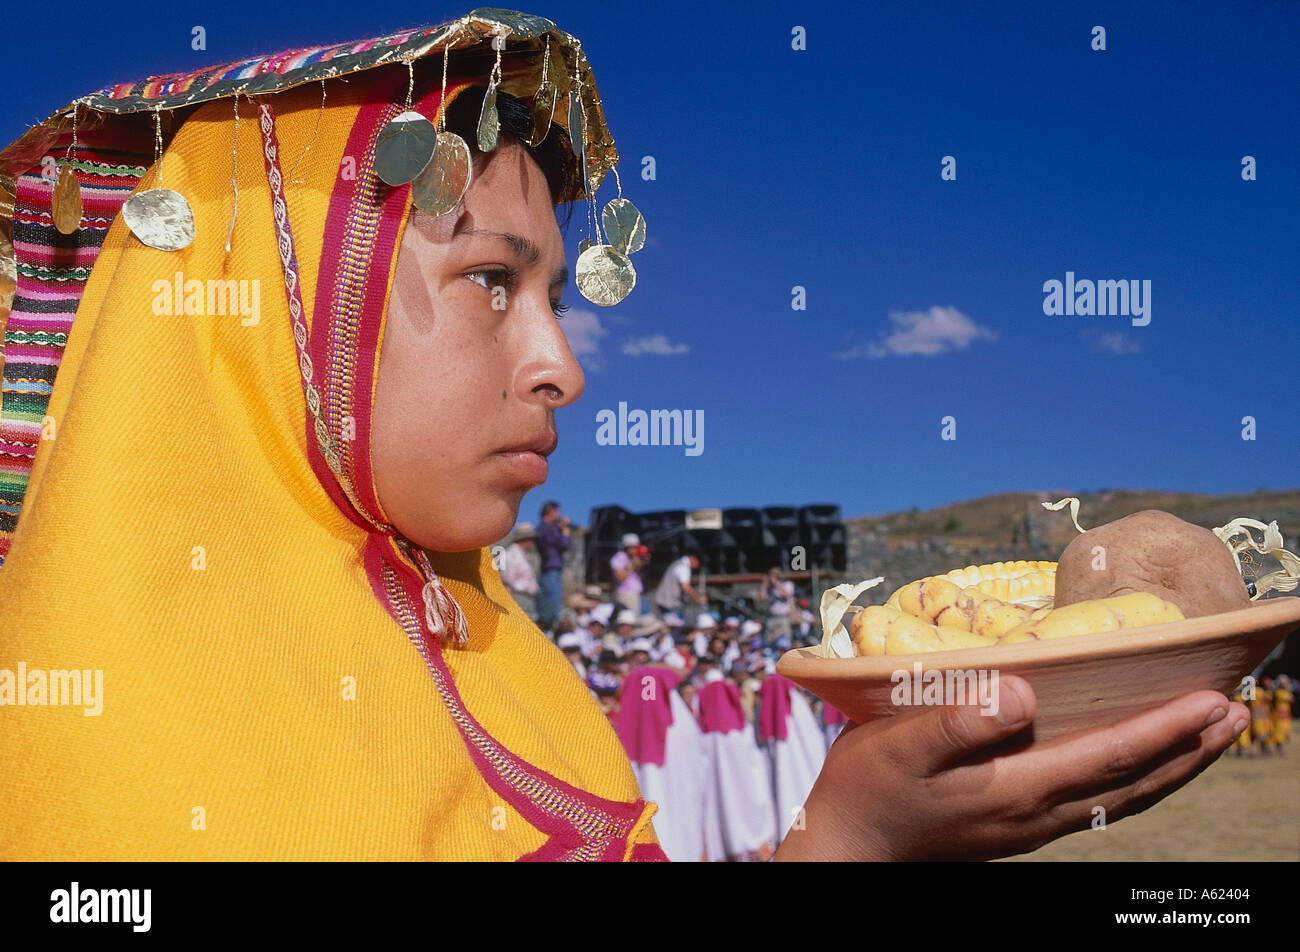 Amérique du Sud PÉROU Cusco Femme en costume coiffe traditionnelle portant une offrande de nourriture à l'Inti Raymi Festival Inca du Soleil Banque D'Images